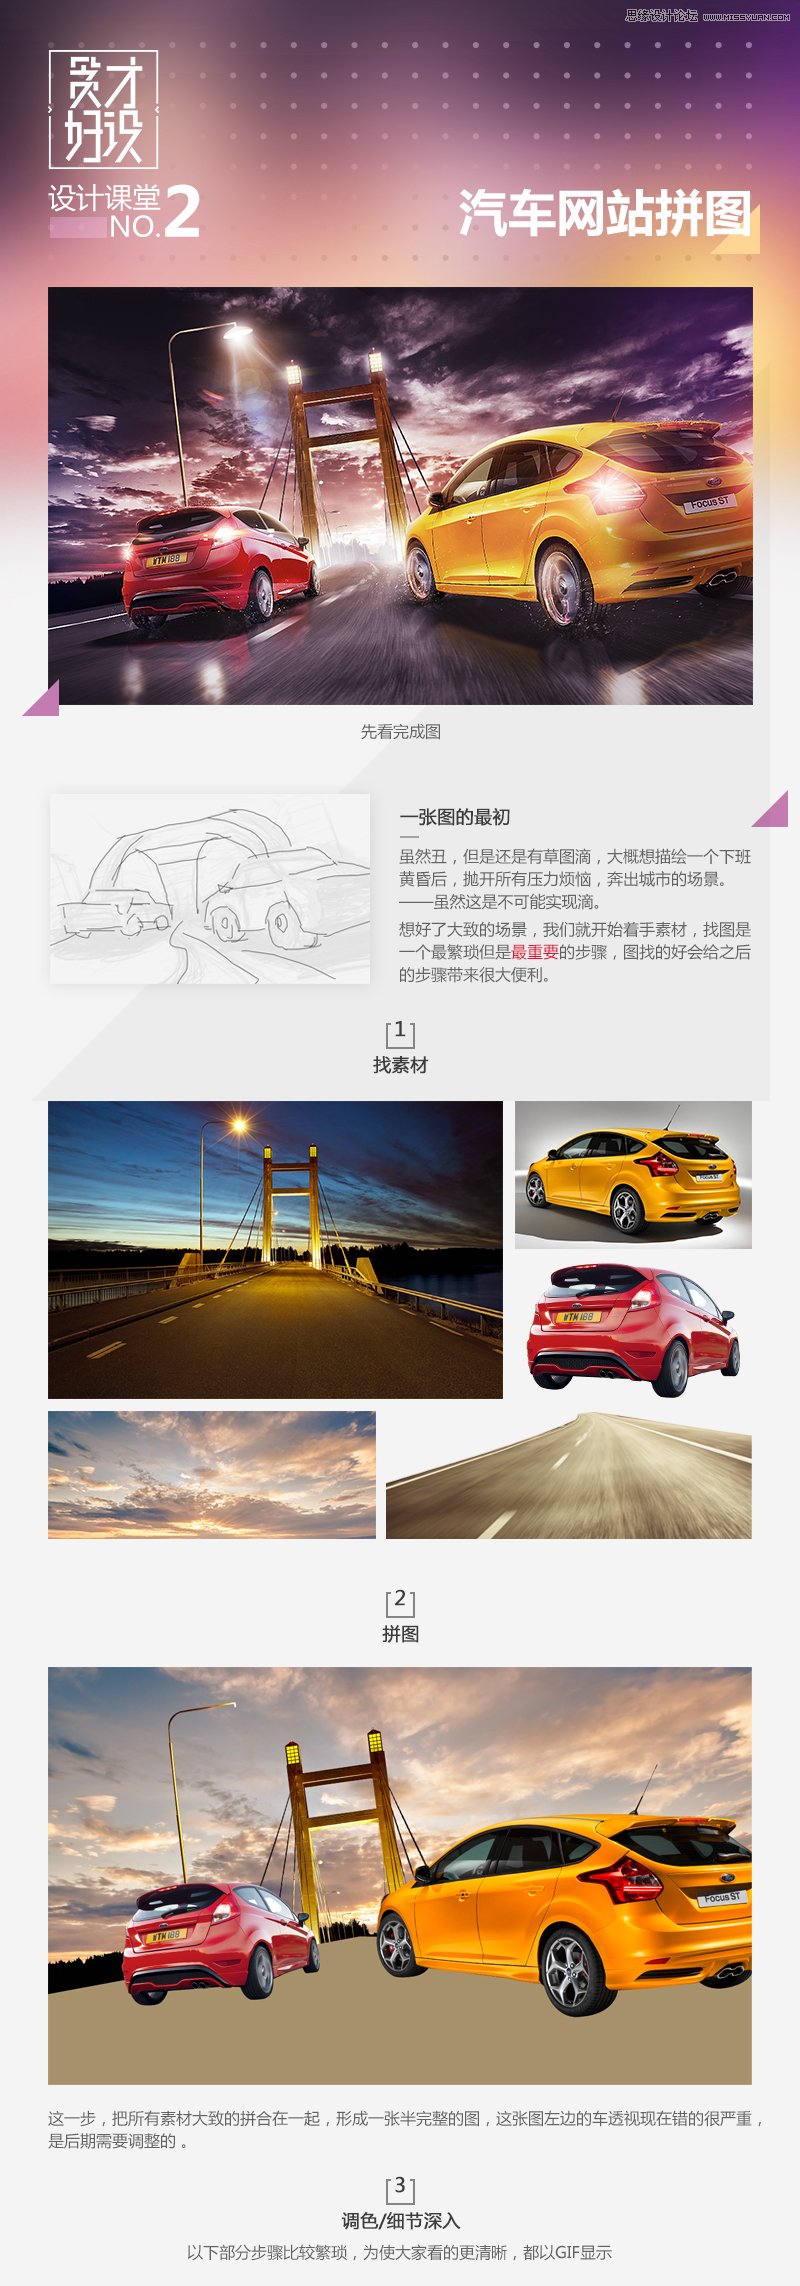 汽車海報，Photoshop制作福特汽車網站主題海報設計教程